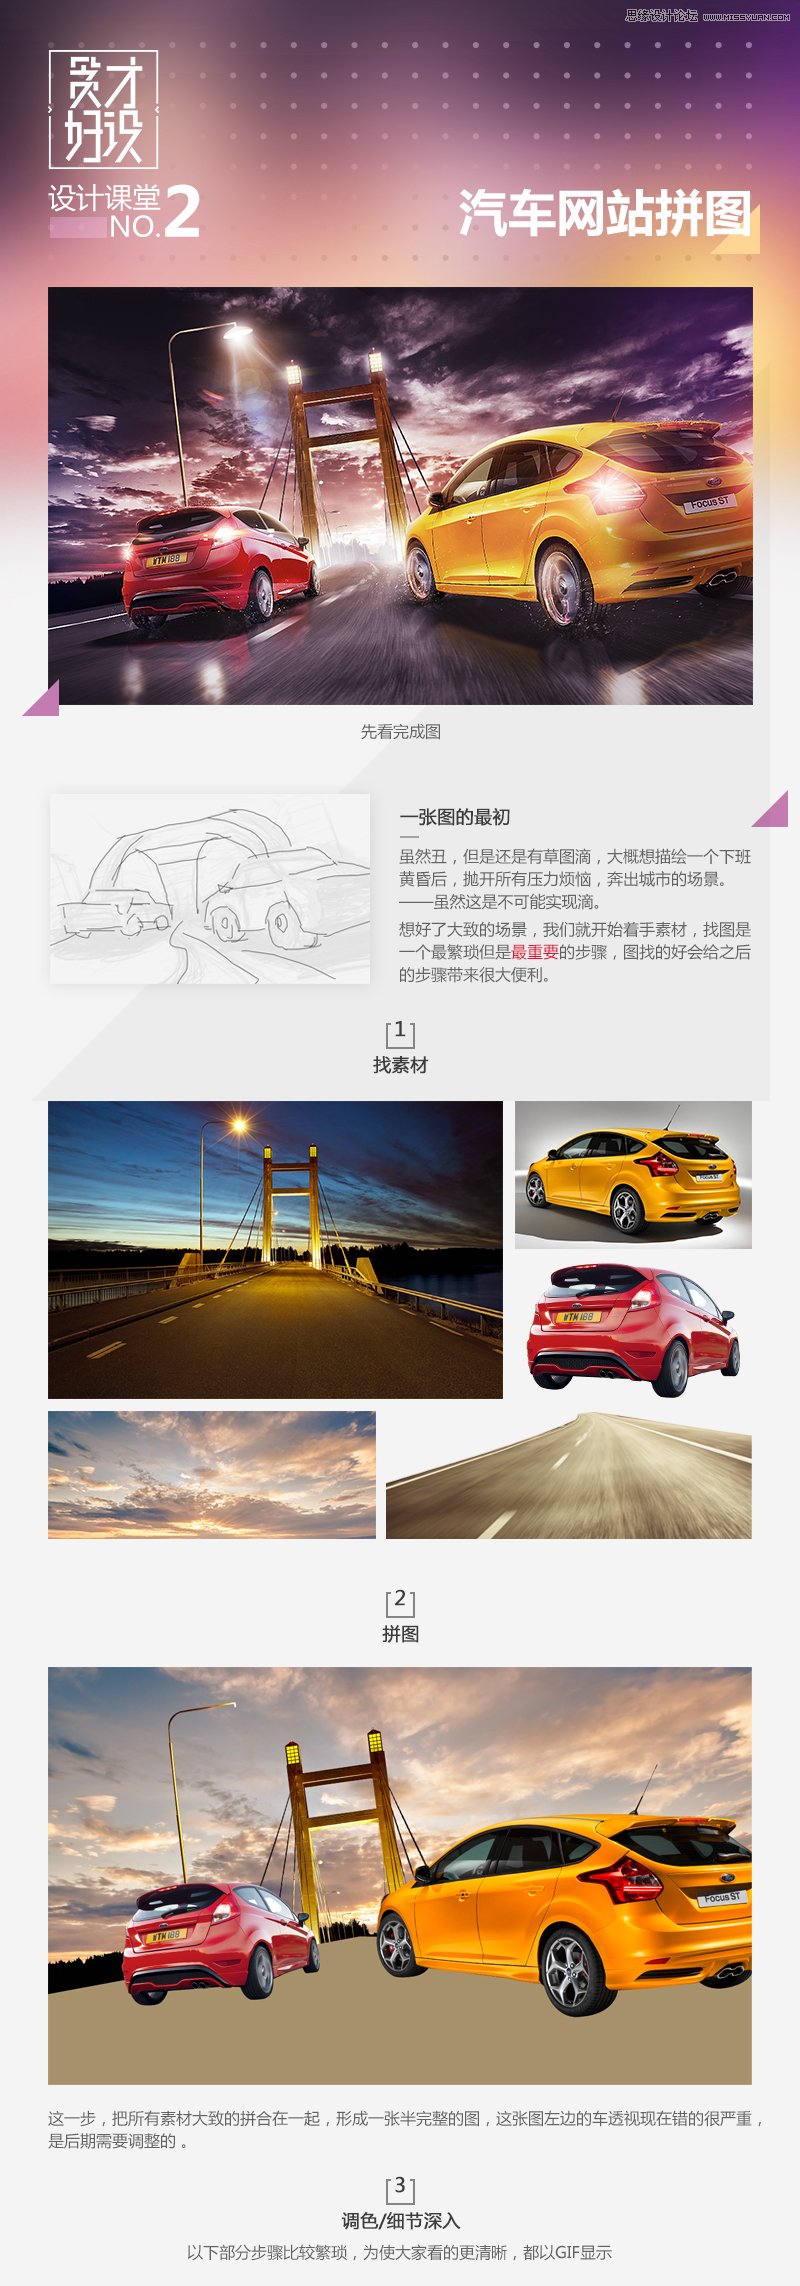 汽車海報，Photoshop制作福特汽車網站主題海報設計教程